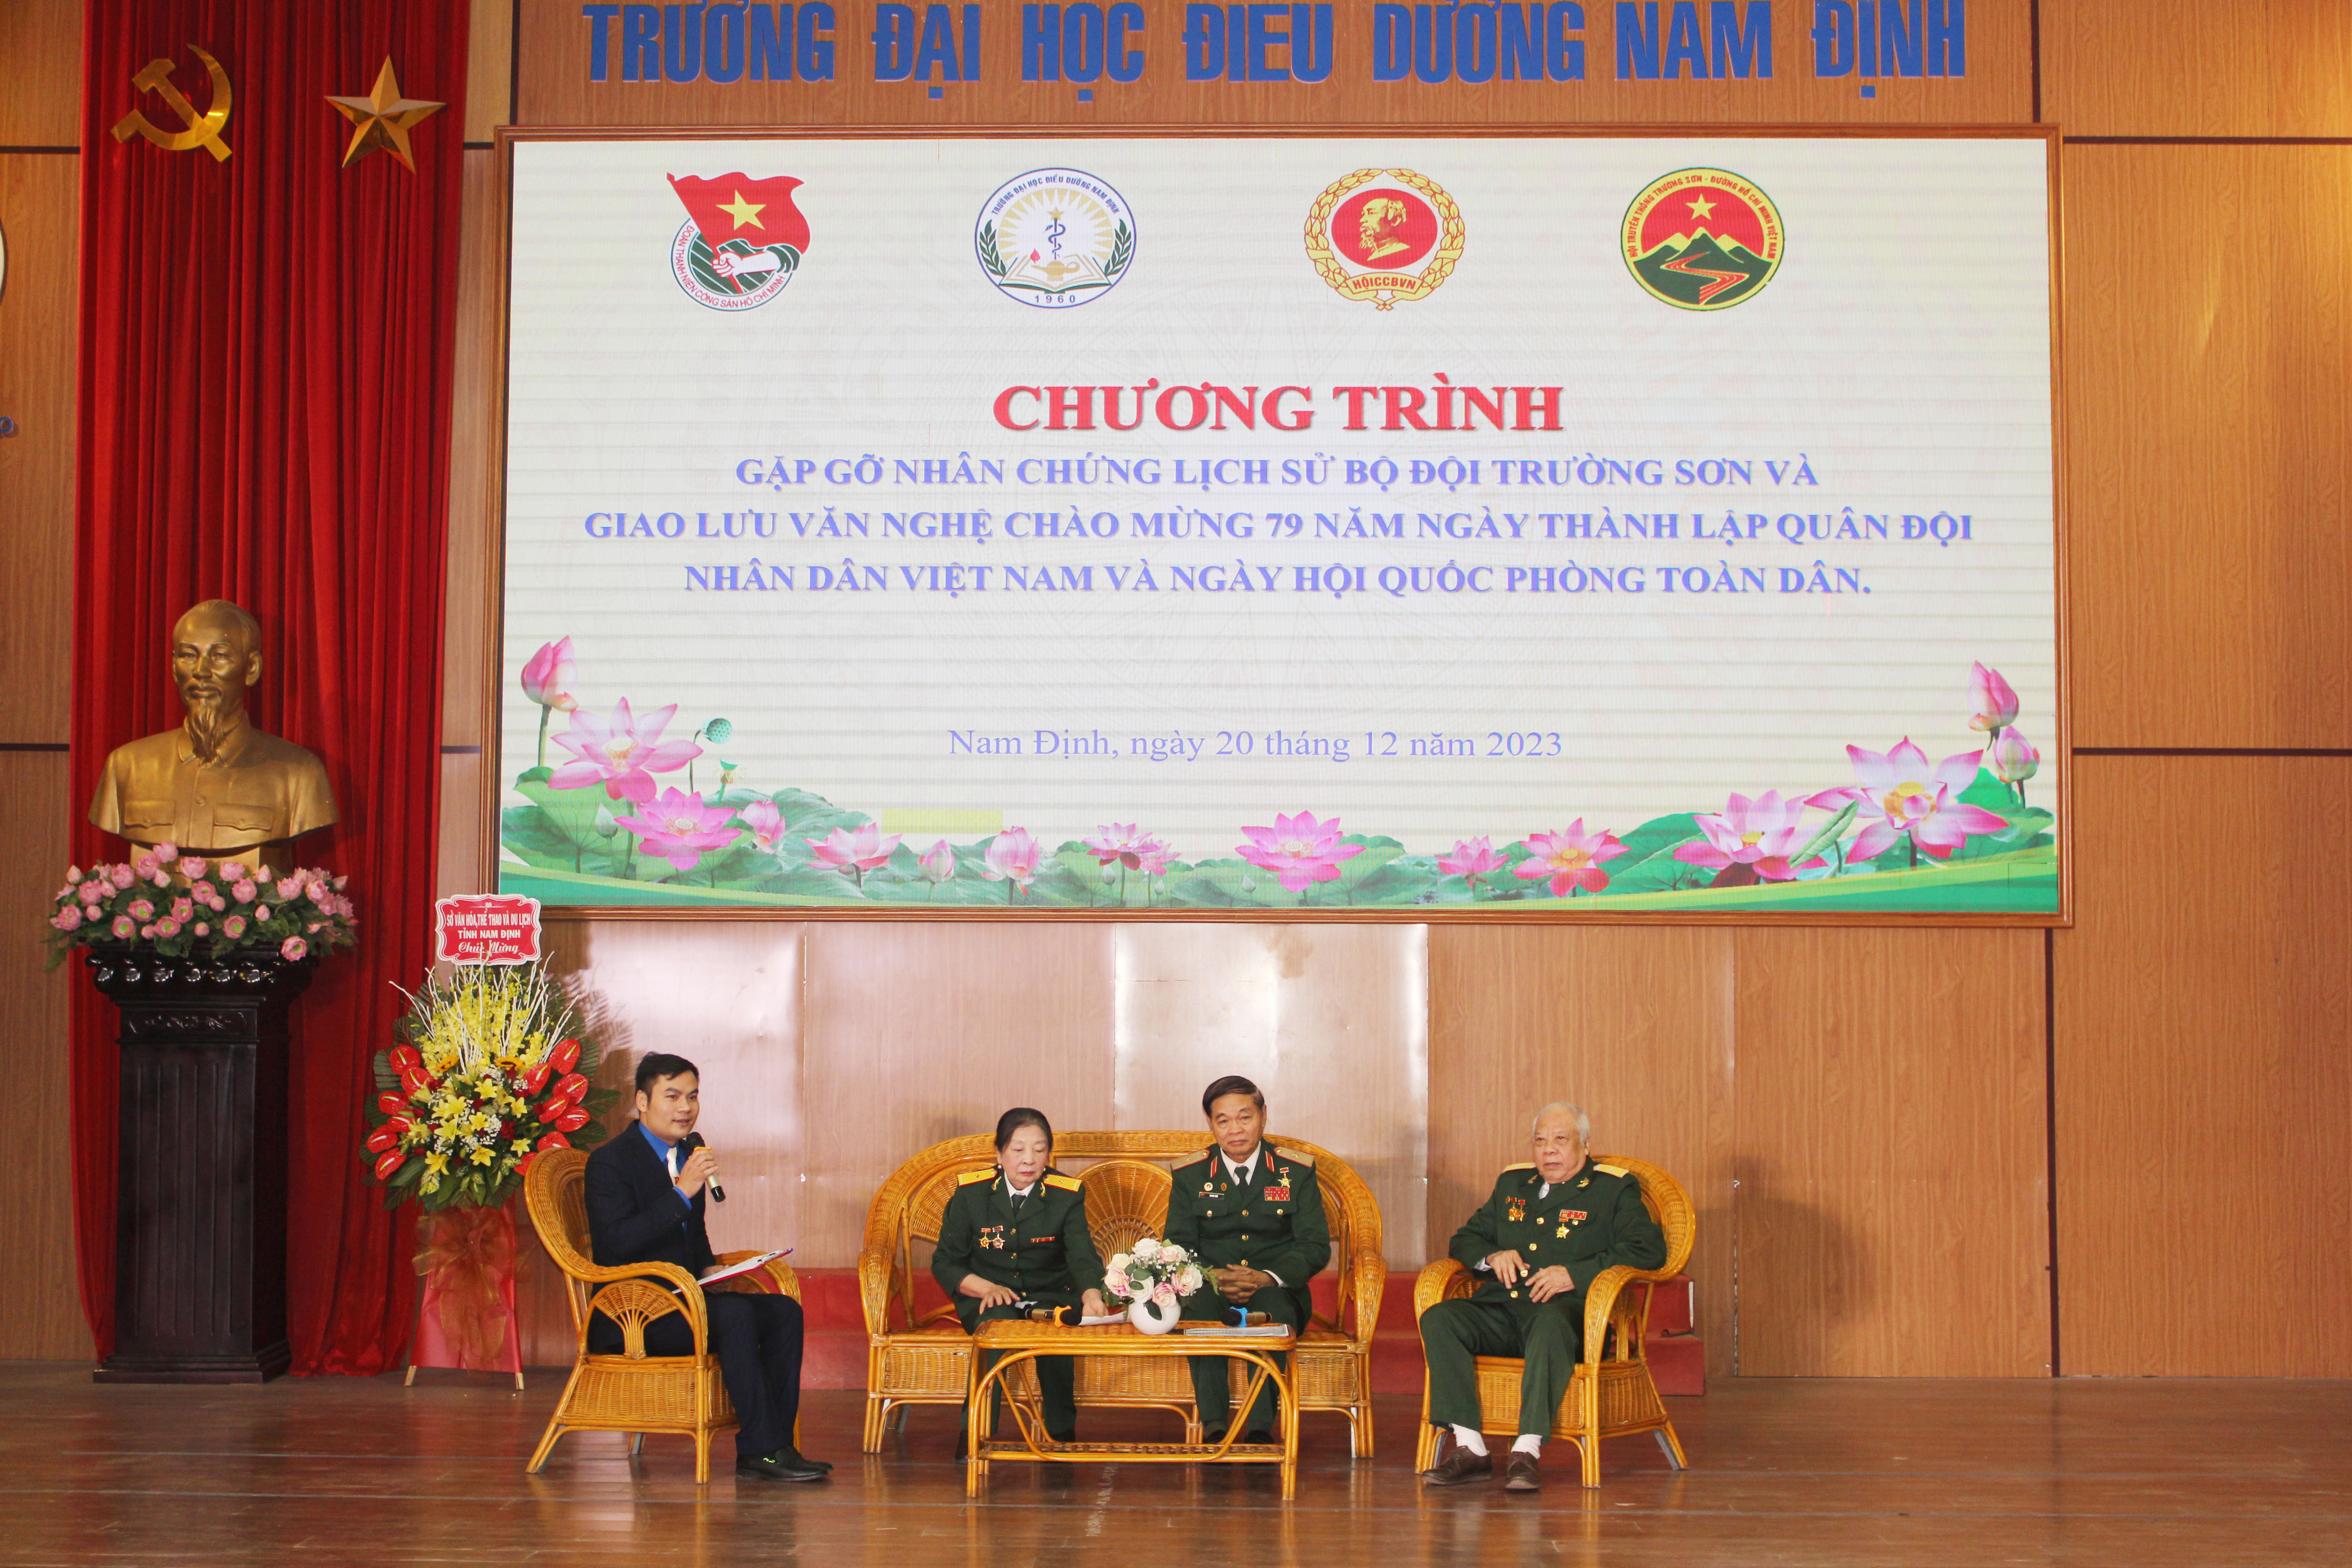 Hội Trường Sơn tỉnh Nam Định và Trường đại học điều dưỡng Nam Định gặp gỡ các nhân chứng lịch sử Bộ đội Trường Sơn.